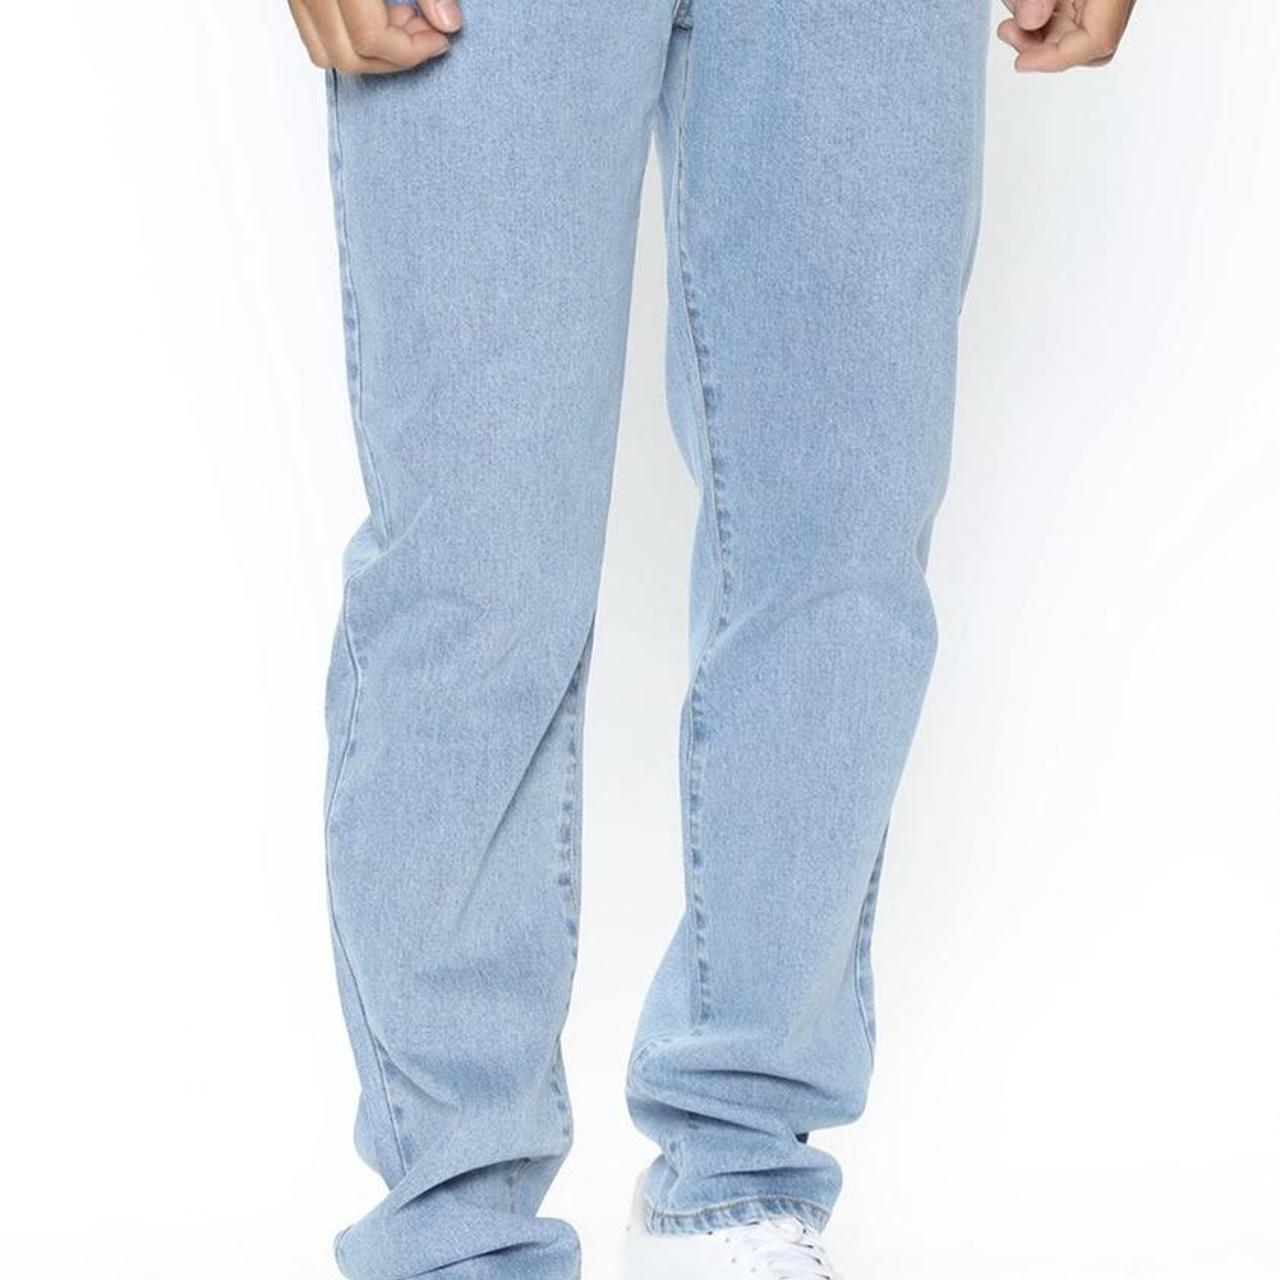 Fashion Nova Men's Jeans | Depop